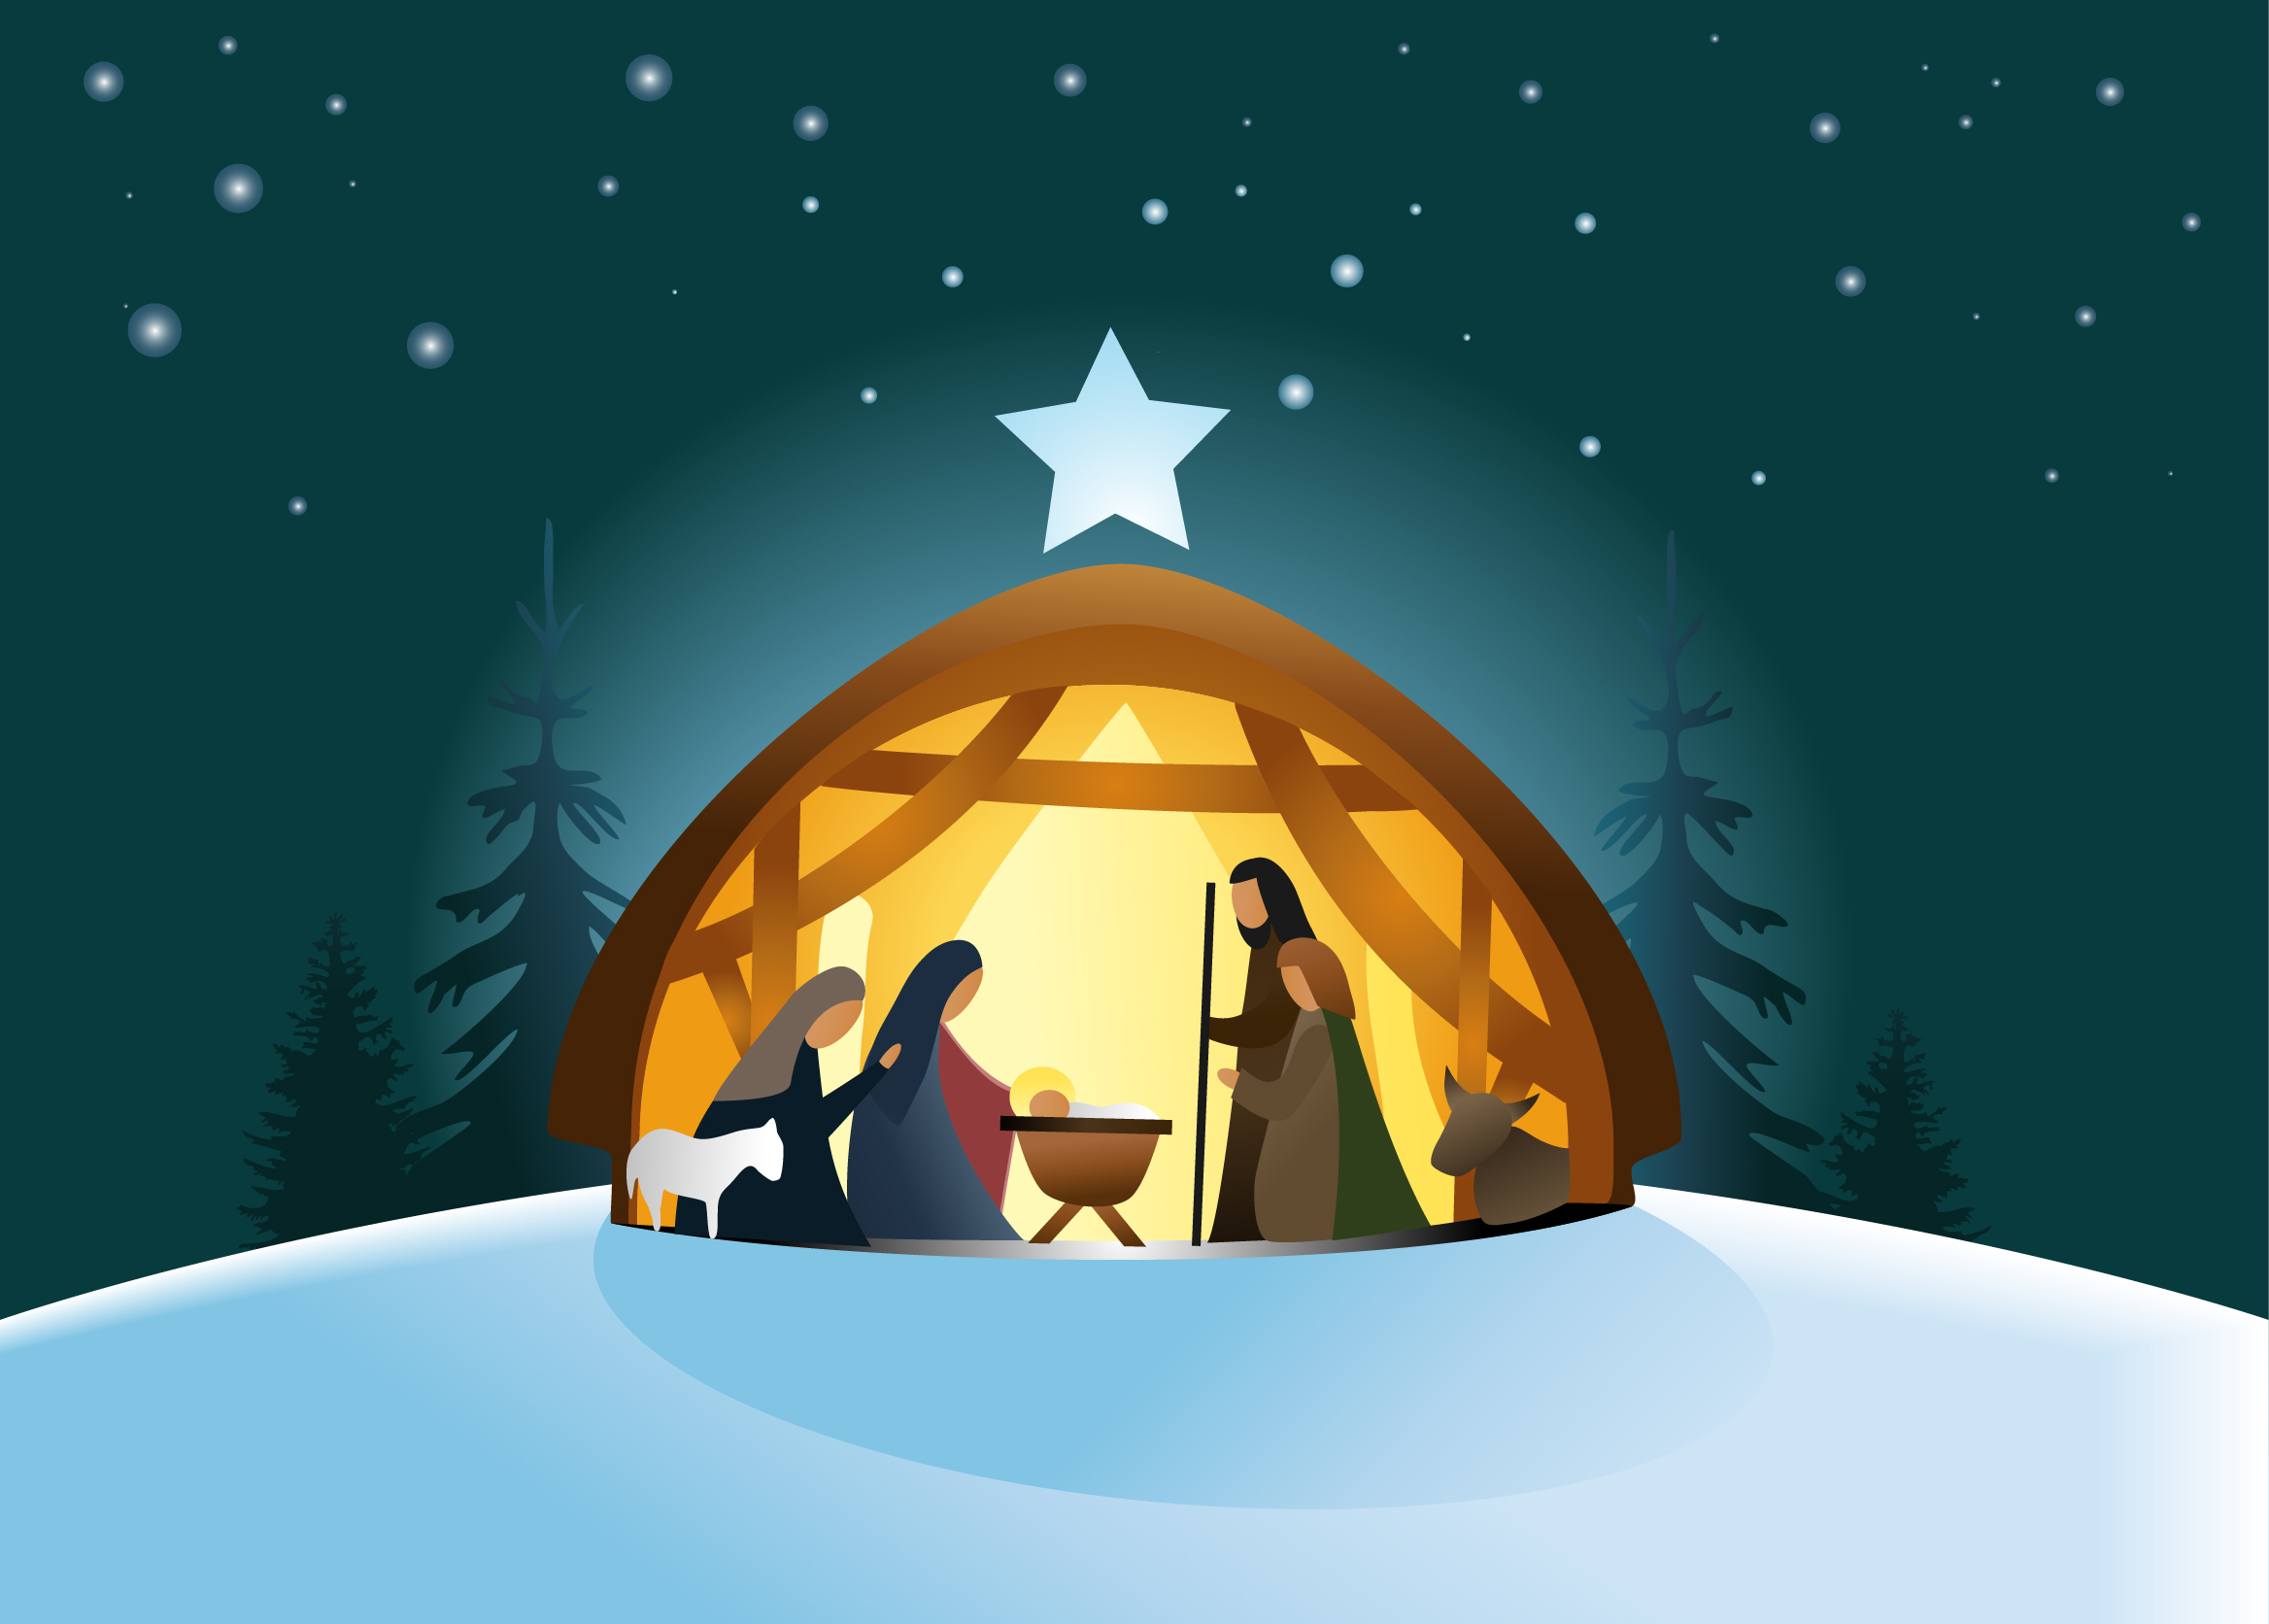 Открытки и картинки с Рождеством Христовым